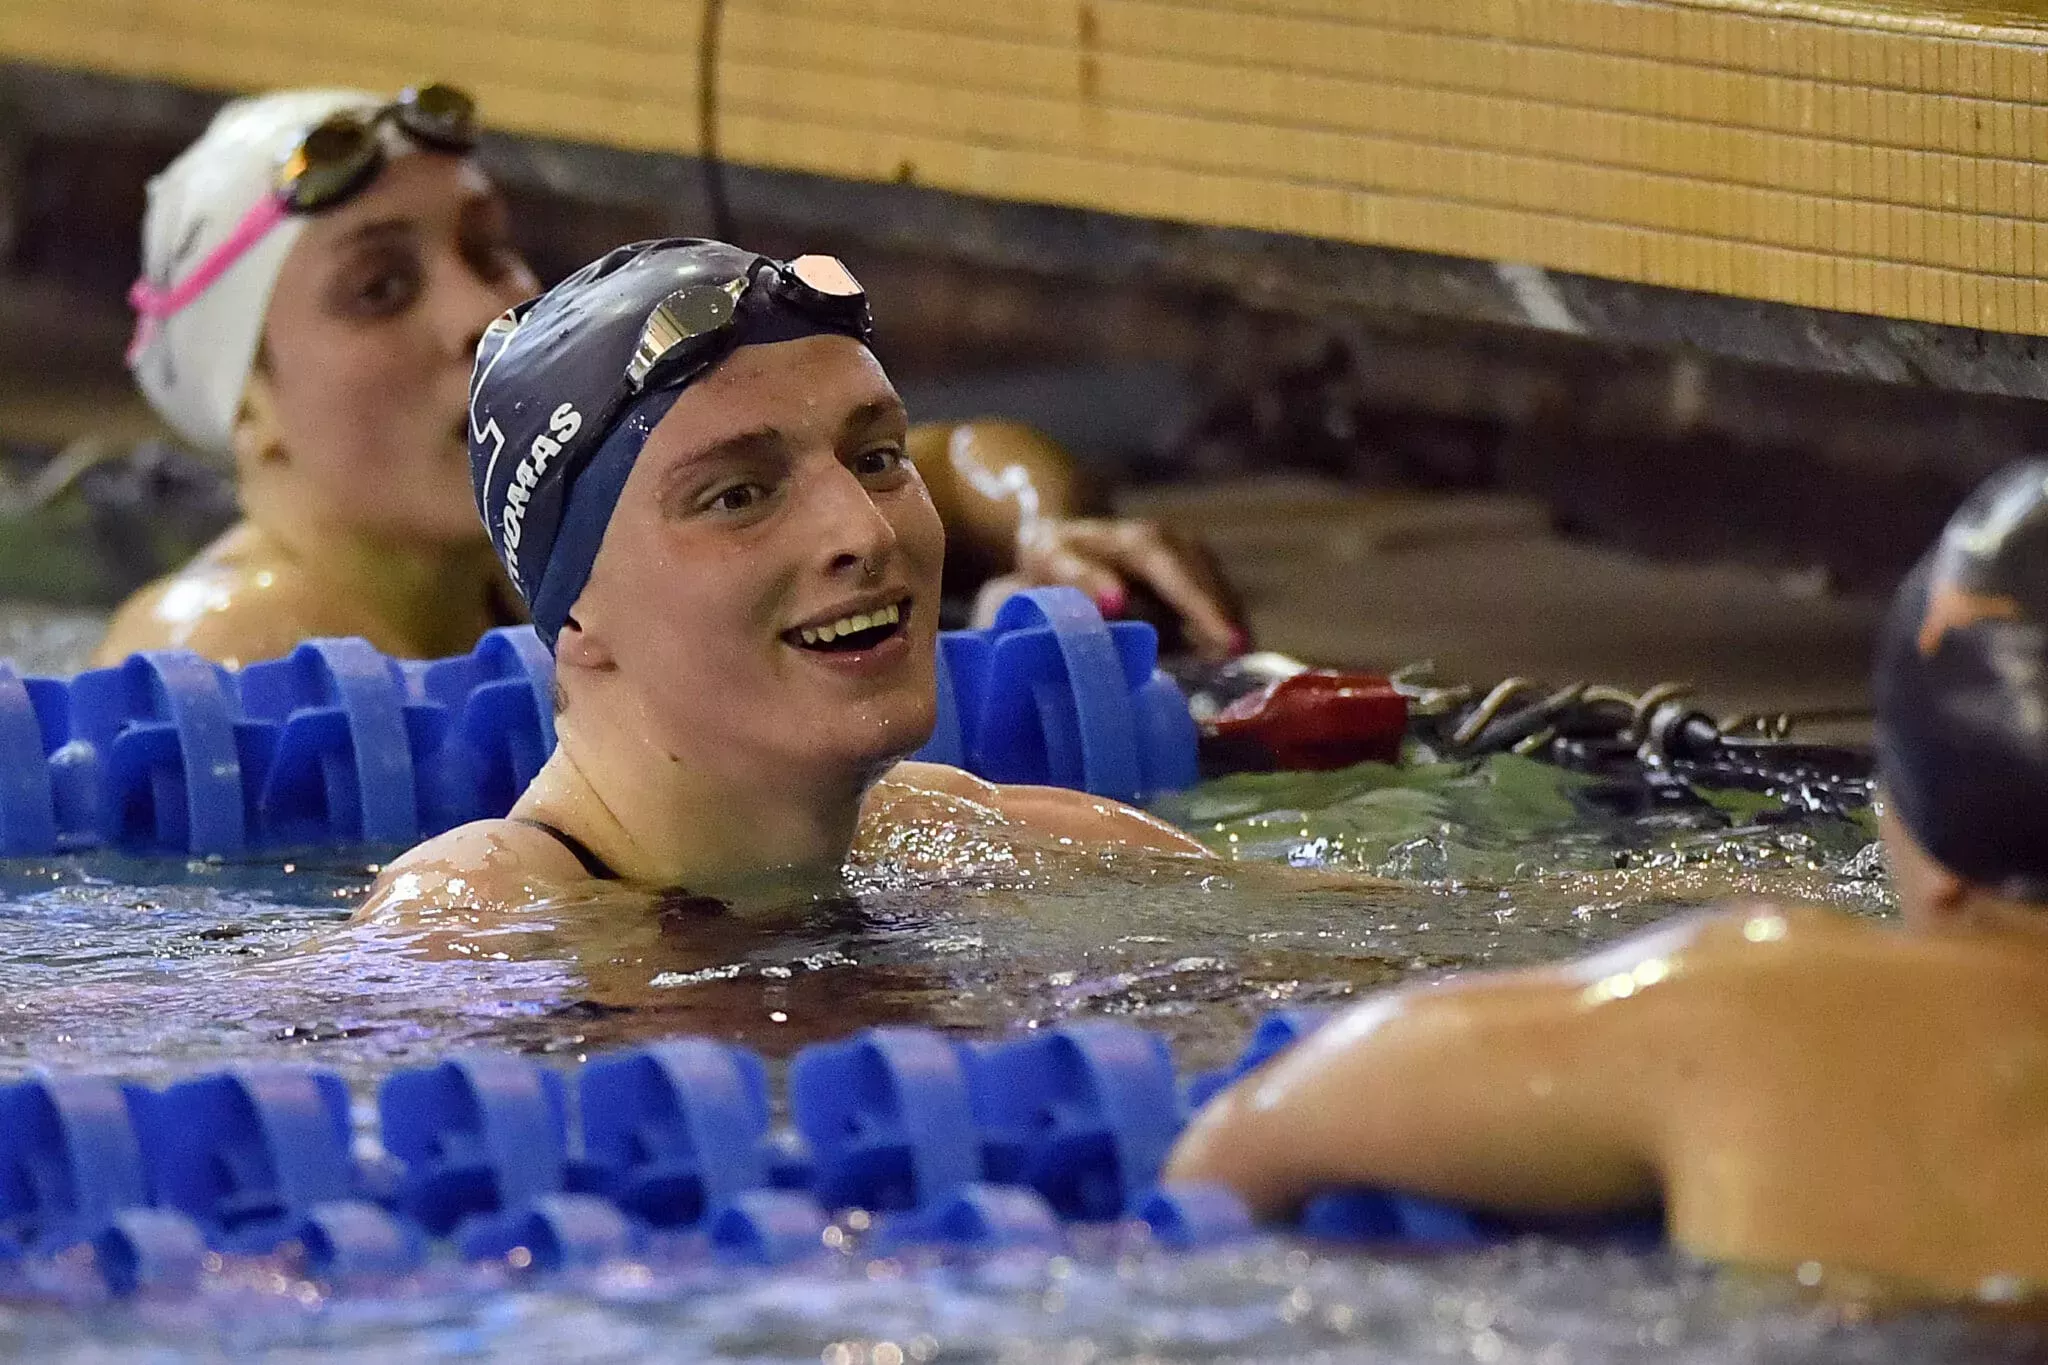 La nadadora trans que batió el récord, Lia Thomas, nominada a Mujer del Año de la NCAA